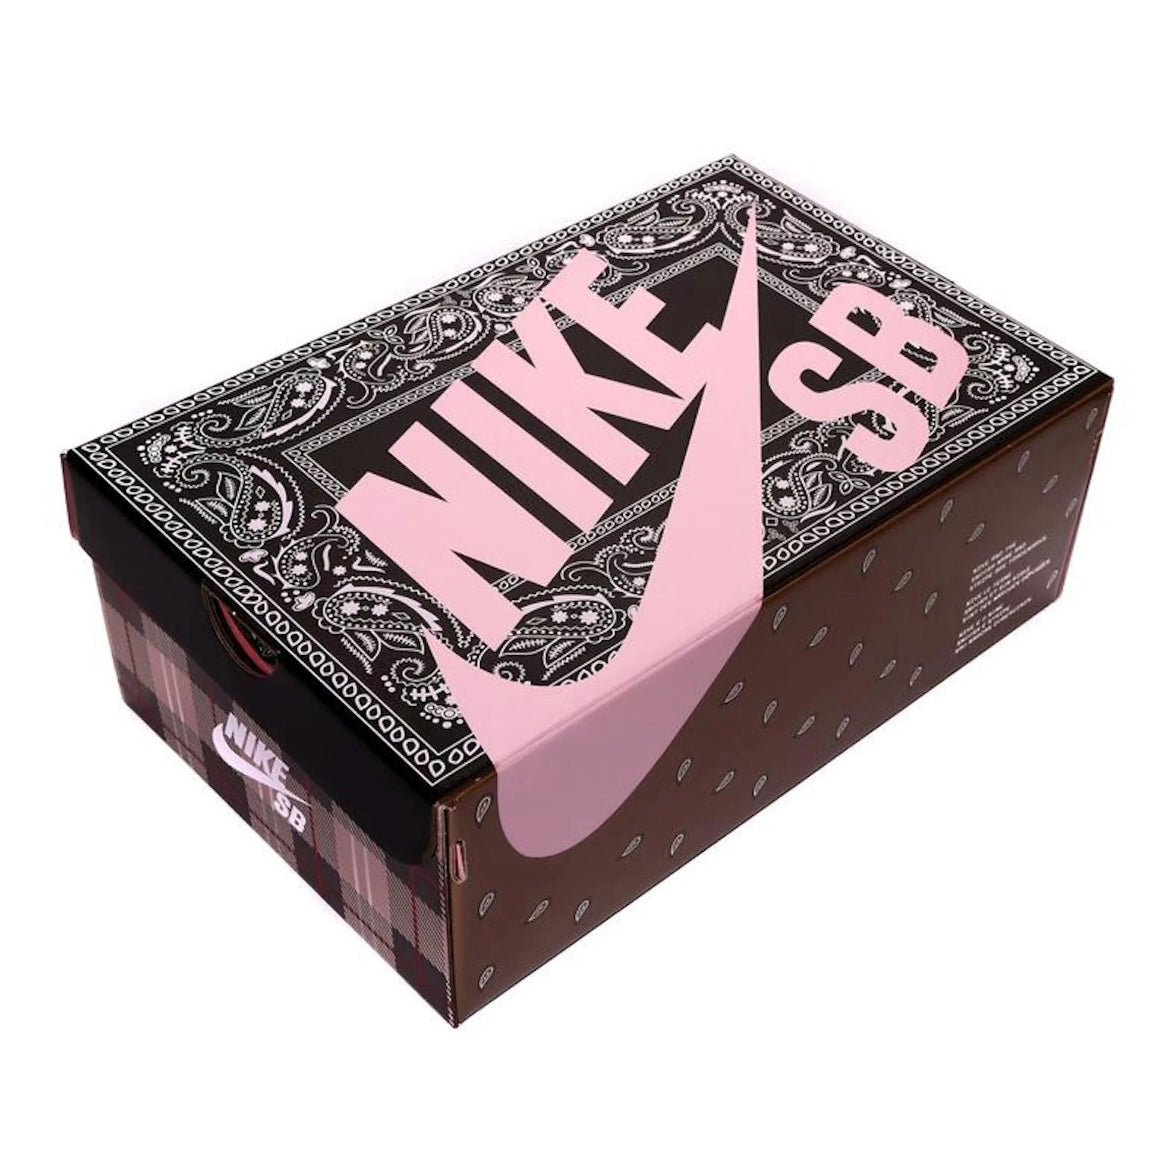 Nike SB Dunk Low Travis Scott (Special Box)